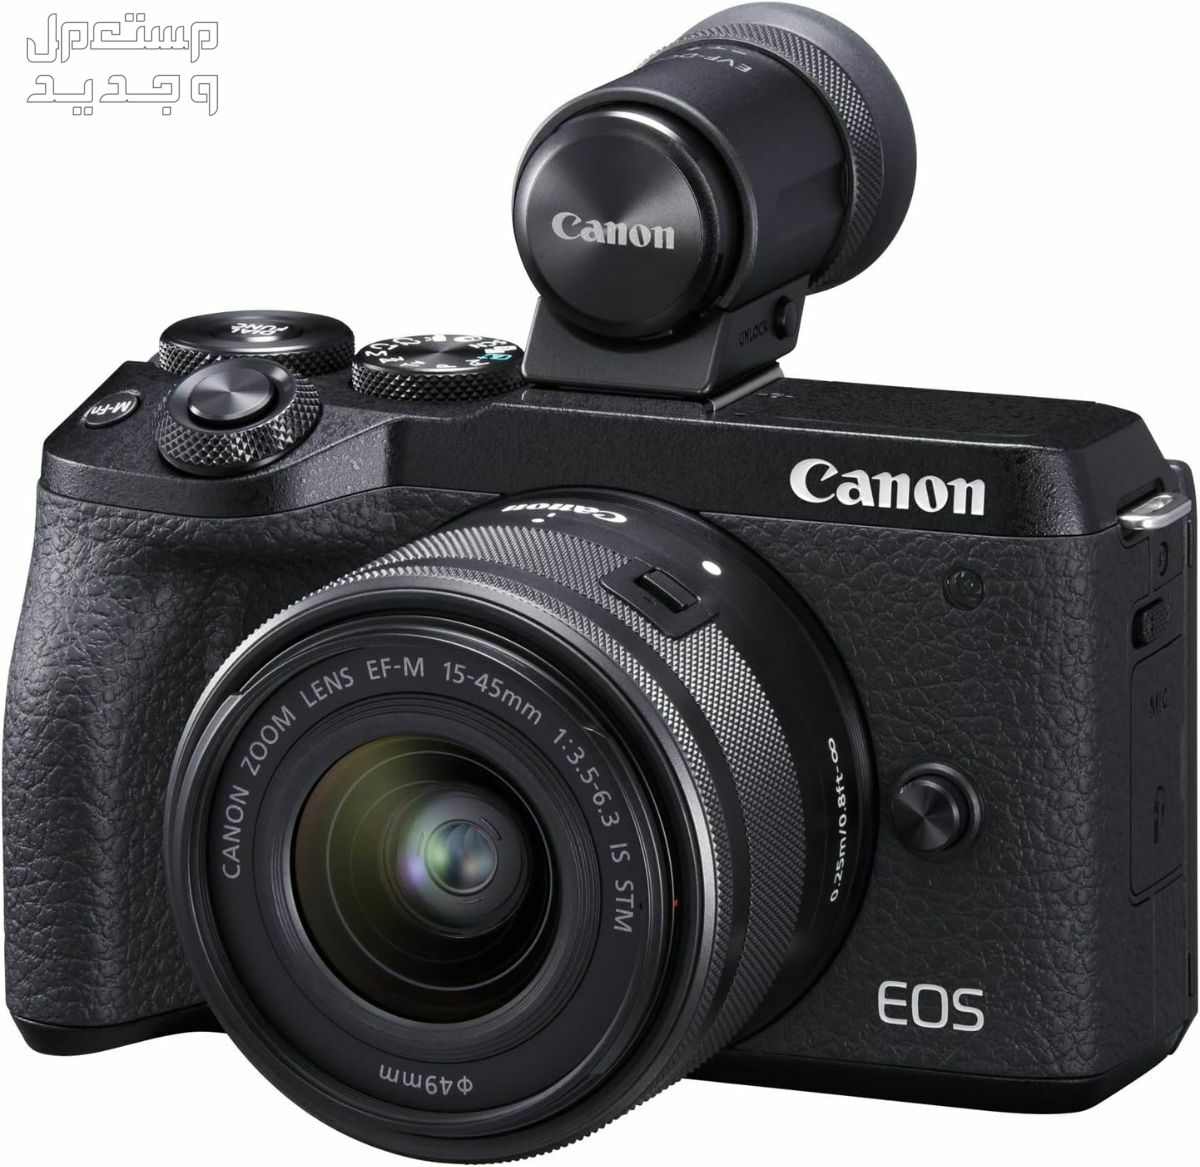 سعر ومميزات ومواصفات أرخص 5 كاميرات تصوير من كانون في سوريا كاميرا Canon EOS M6 Mark II